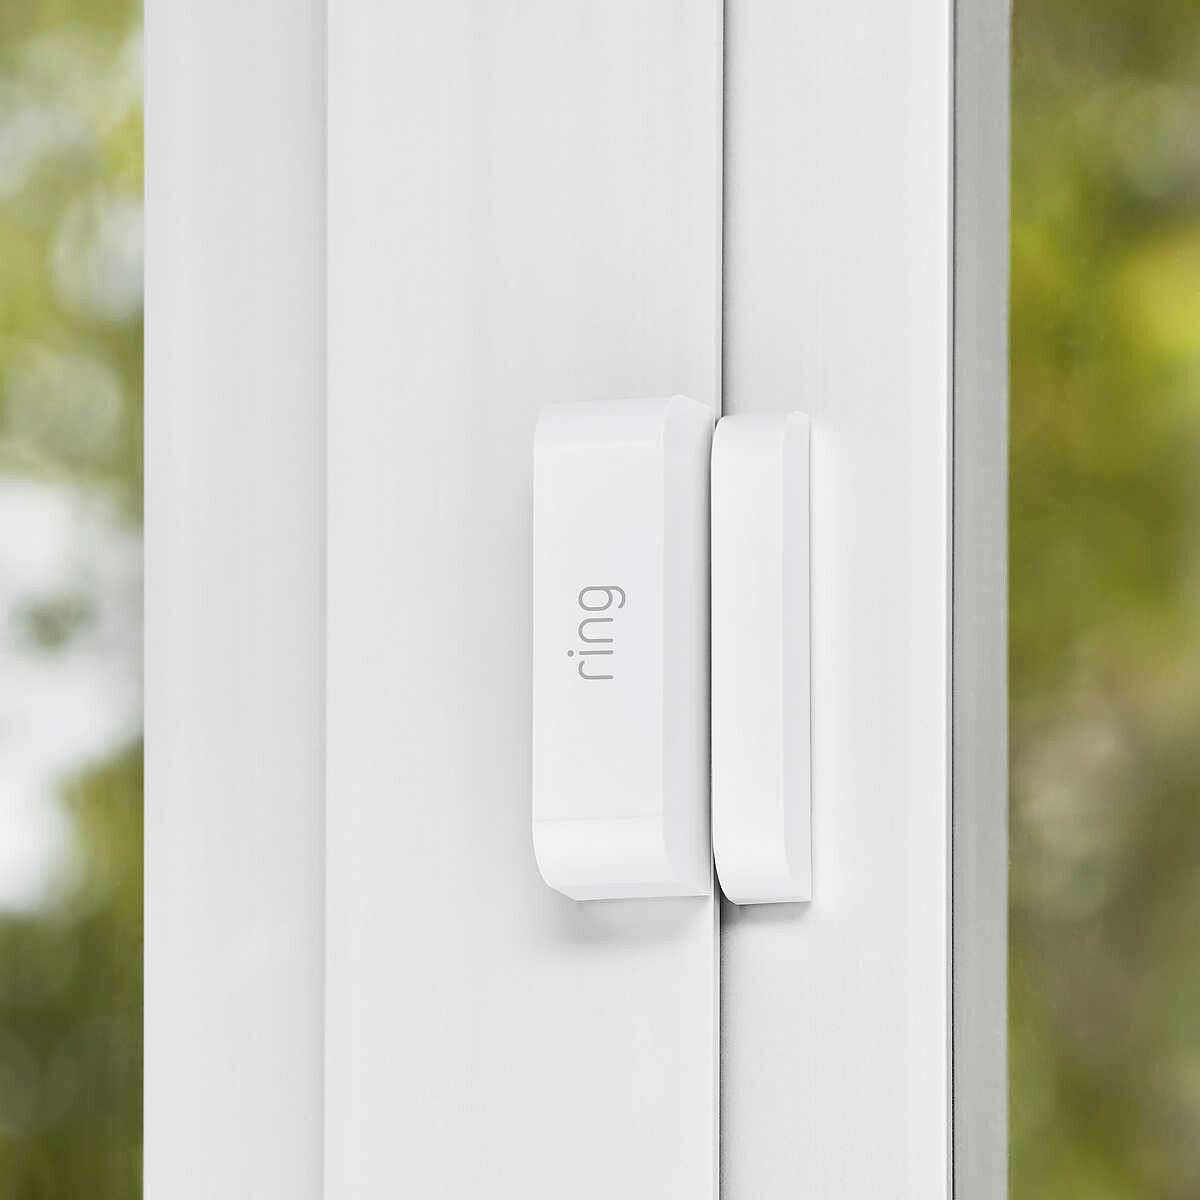 Ring Door/Window Alarm Sensors, 4pack Everything Else